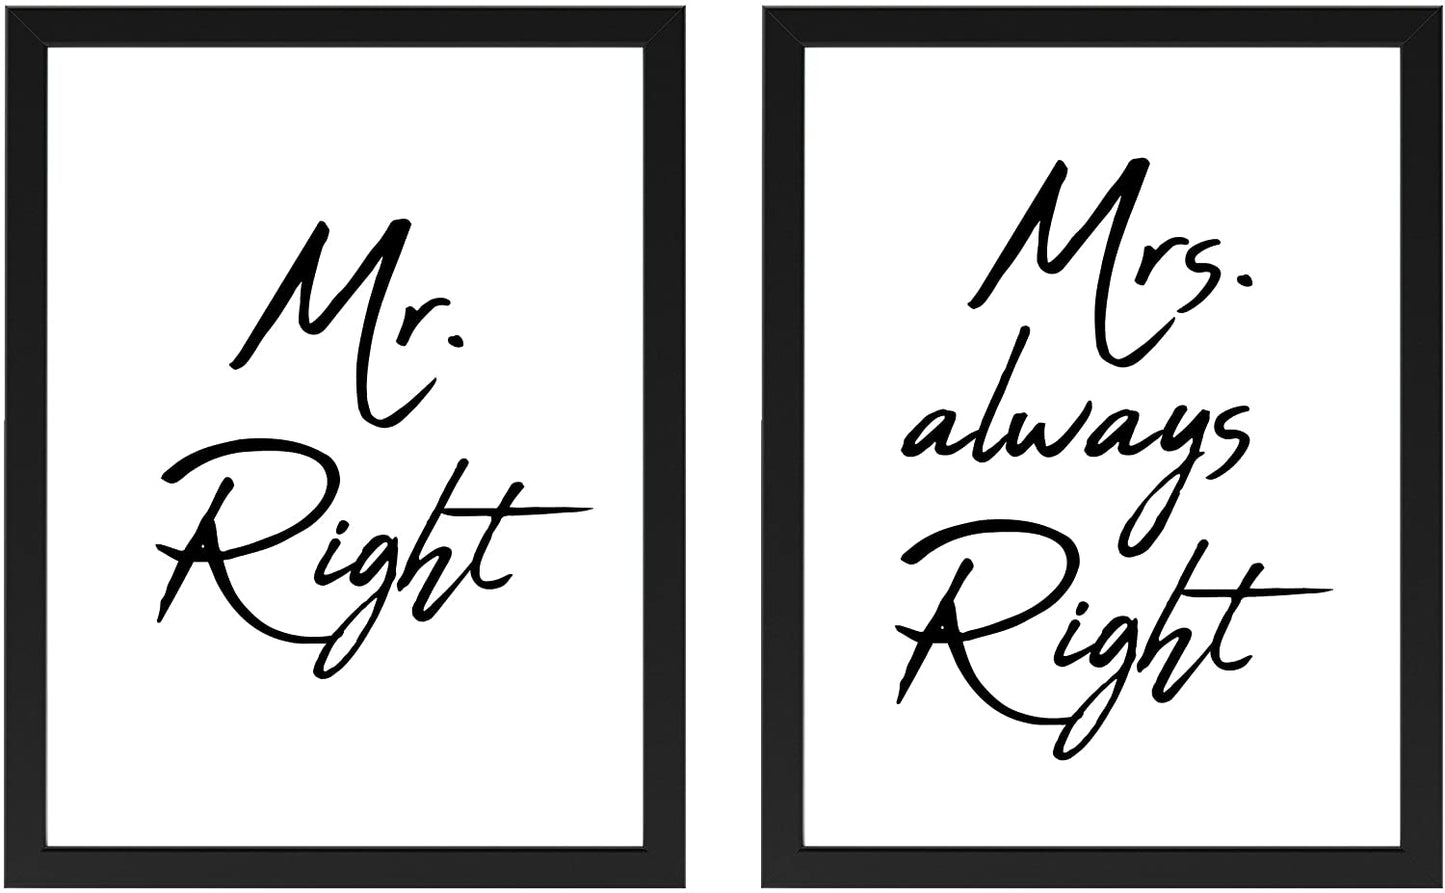 PICSonPAPER Poster 2er-Set Mr. Right & Mrs. Always Right, schwarz gerahmt 30 cm x 40 cm, Hochzeitsgeschenk, Geschenk zur Hochzeit (Mr. Right & Mrs. Always Right, 30 cm x 40 cm schwarz gerahmt)